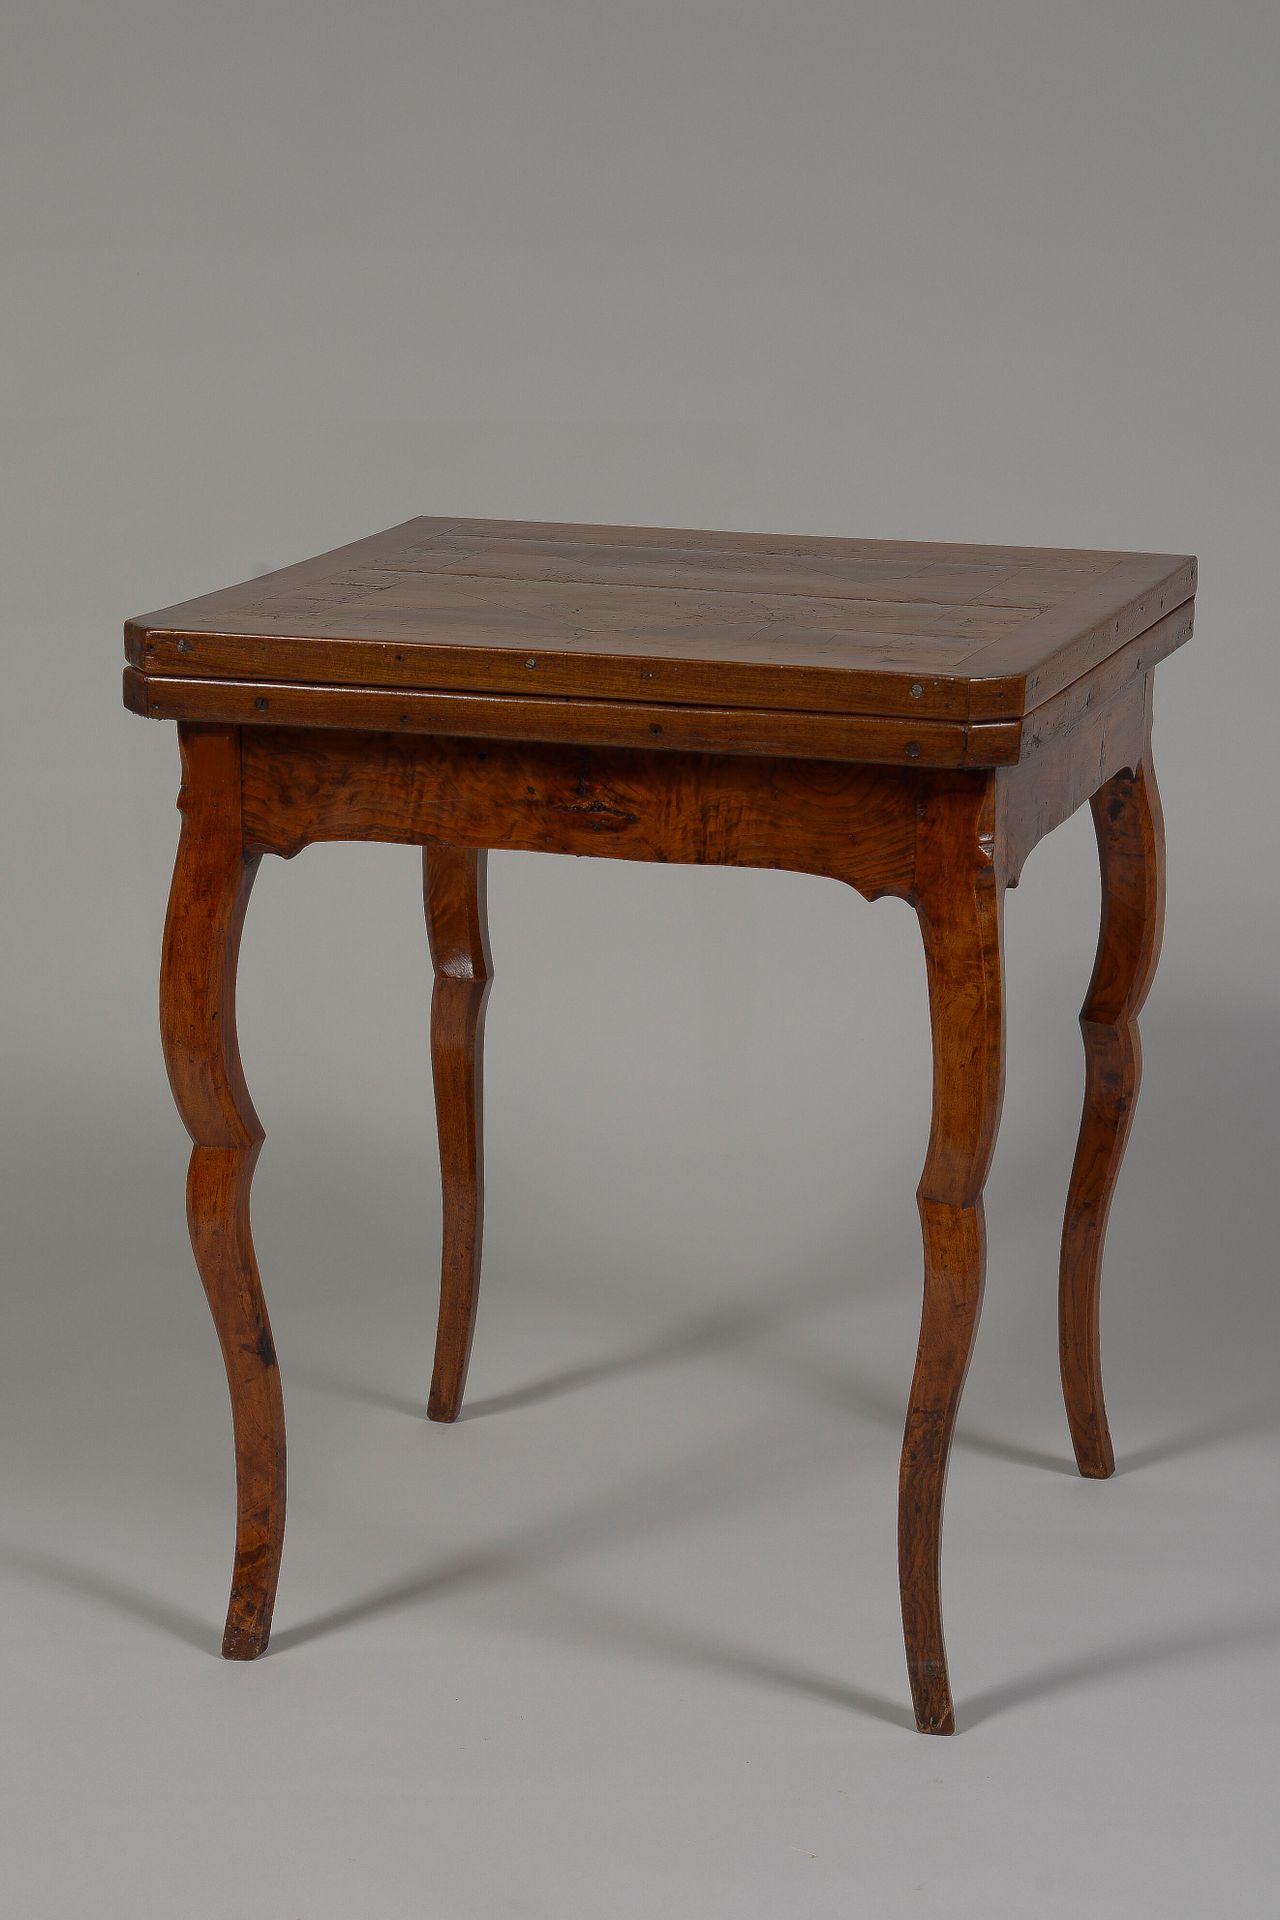 Null 方形游戏桌

天然木制方桌，双拱形桌腿。桌面上镶嵌着菱形形状的毛刺木板。

来自罗纳河谷的作品，18世纪

(顶部的裂缝已恢复)

高：72.5；宽：&hellip;